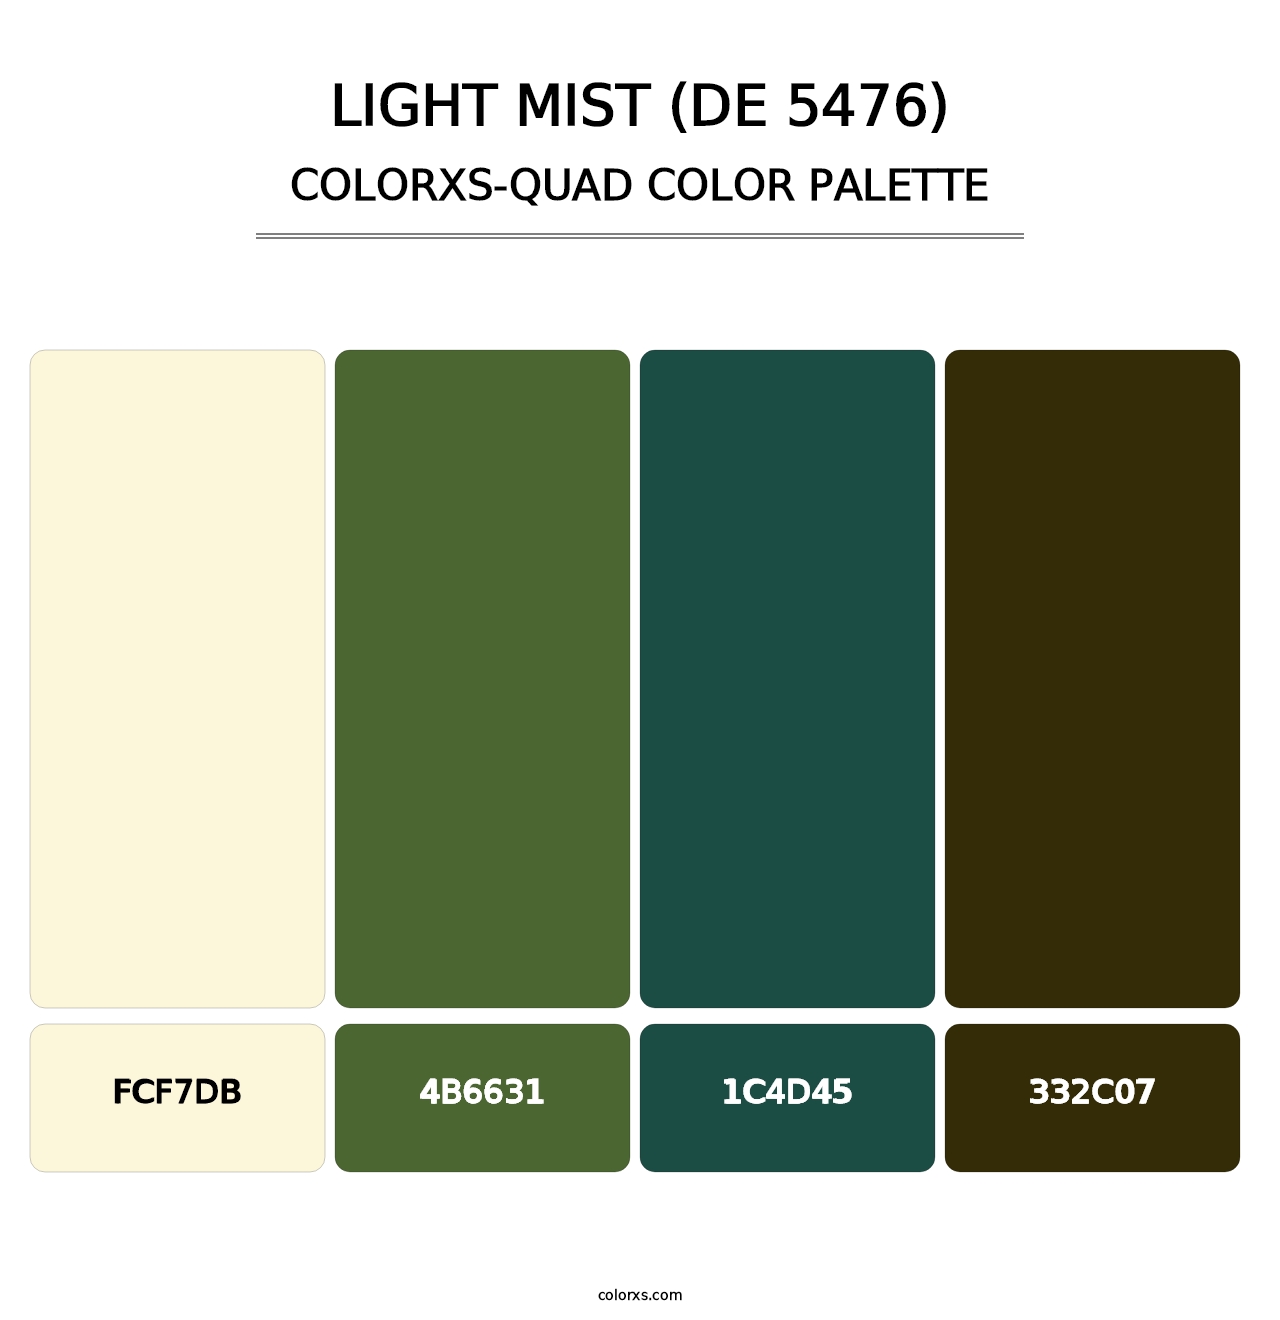 Light Mist (DE 5476) - Colorxs Quad Palette